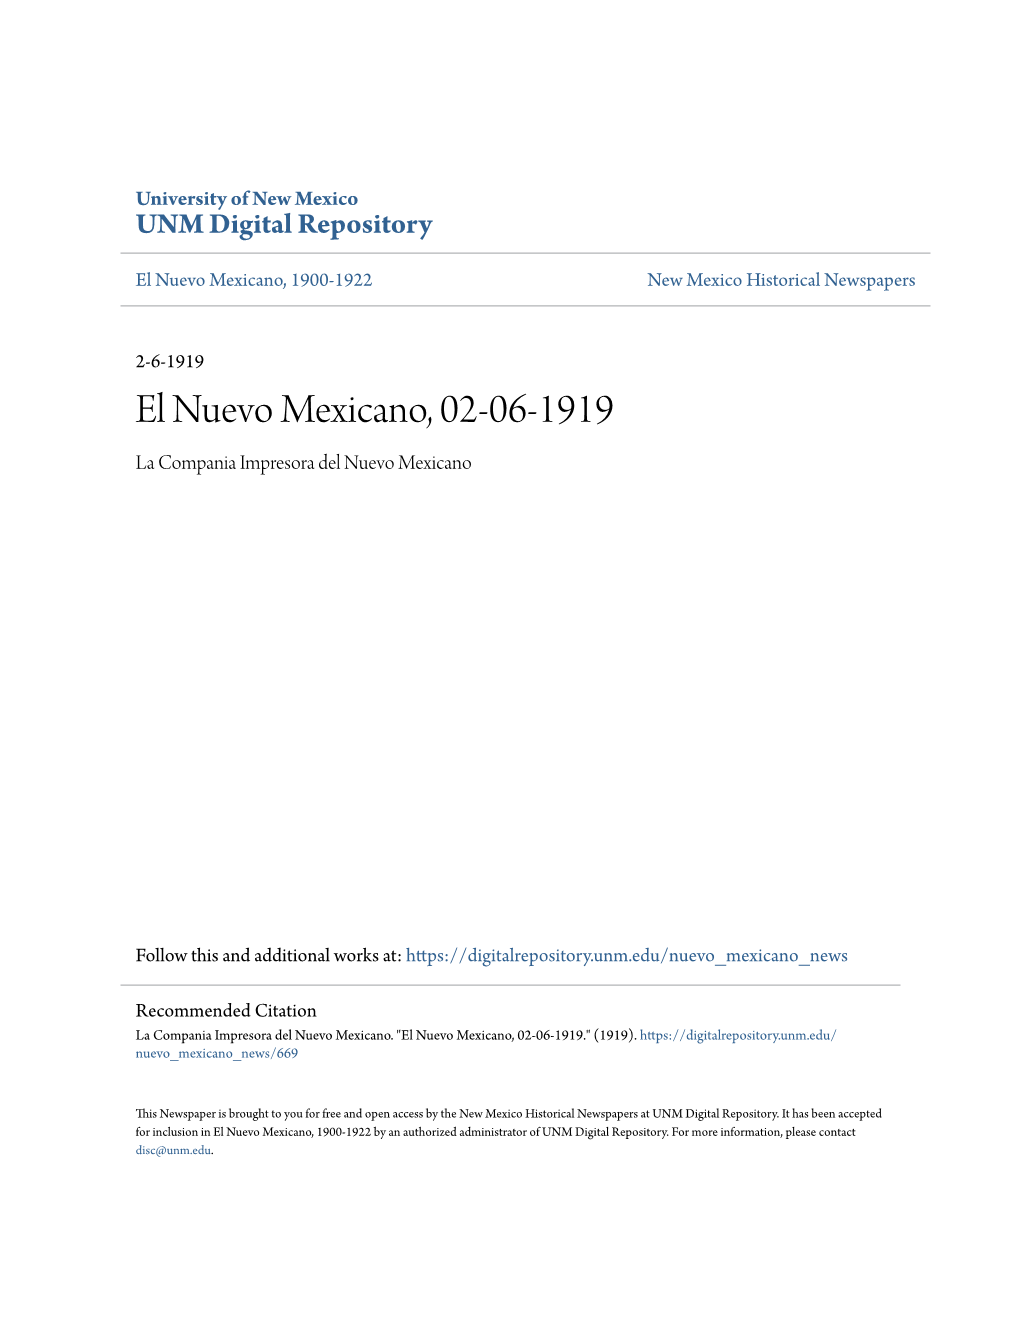 El Nuevo Mexicano, 02-06-1919 La Compania Impresora Del Nuevo Mexicano